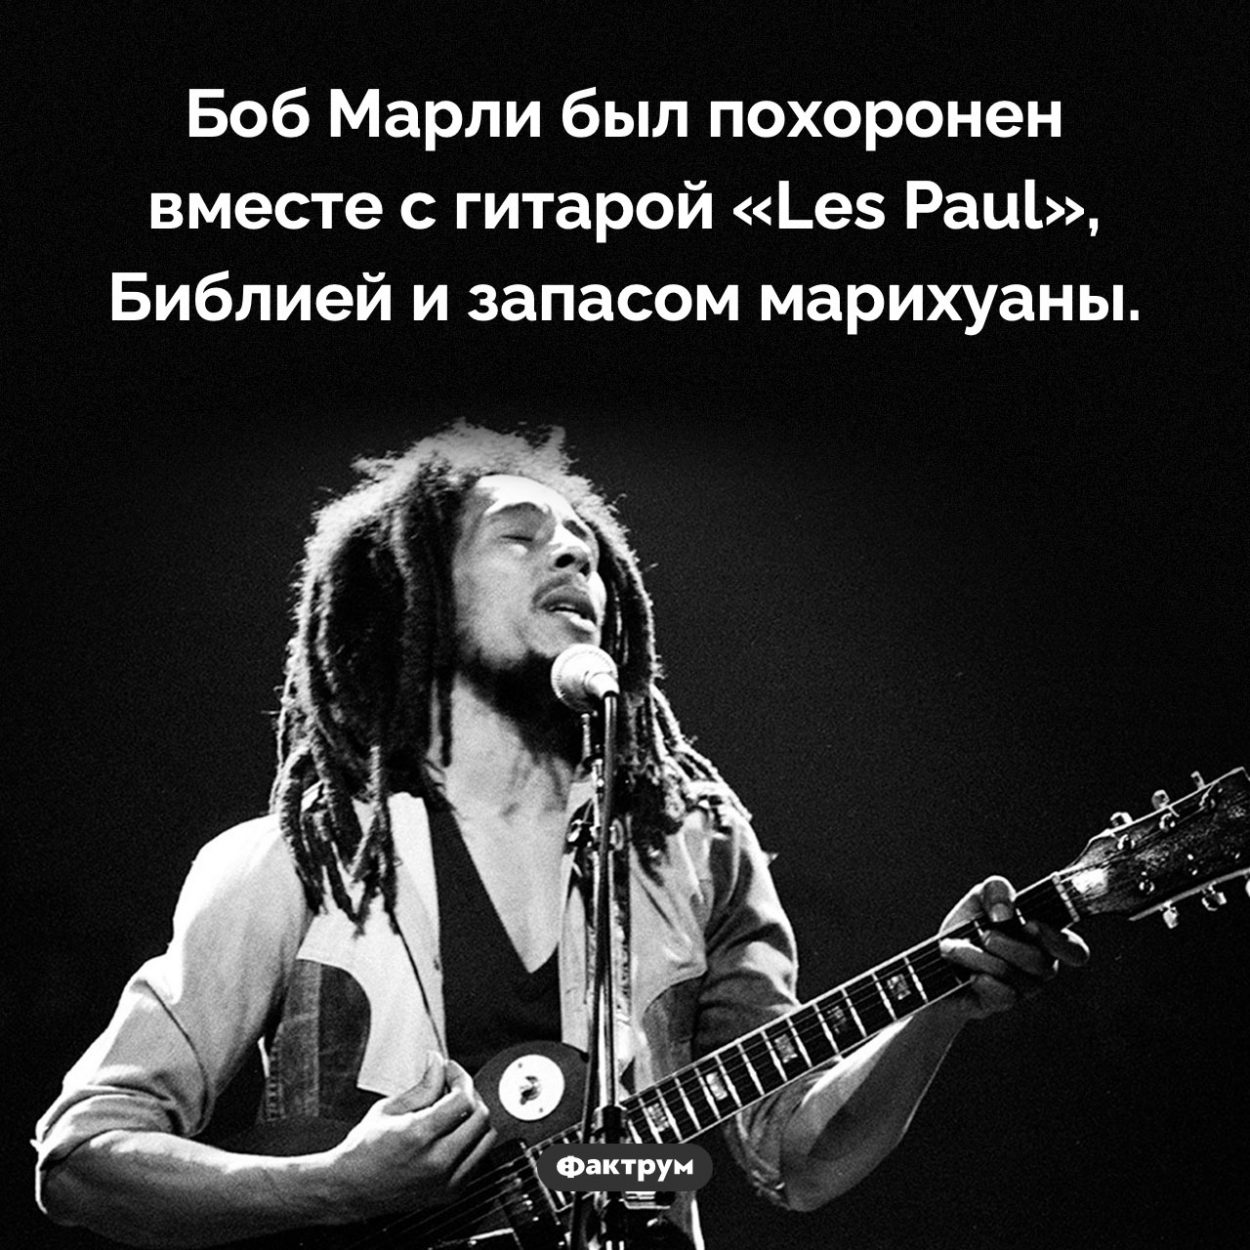 Как был похоронен Боб Марли. Боб Марли был похоронен вместе с гитарой «Les Paul», Библией и запасом марихуаны.